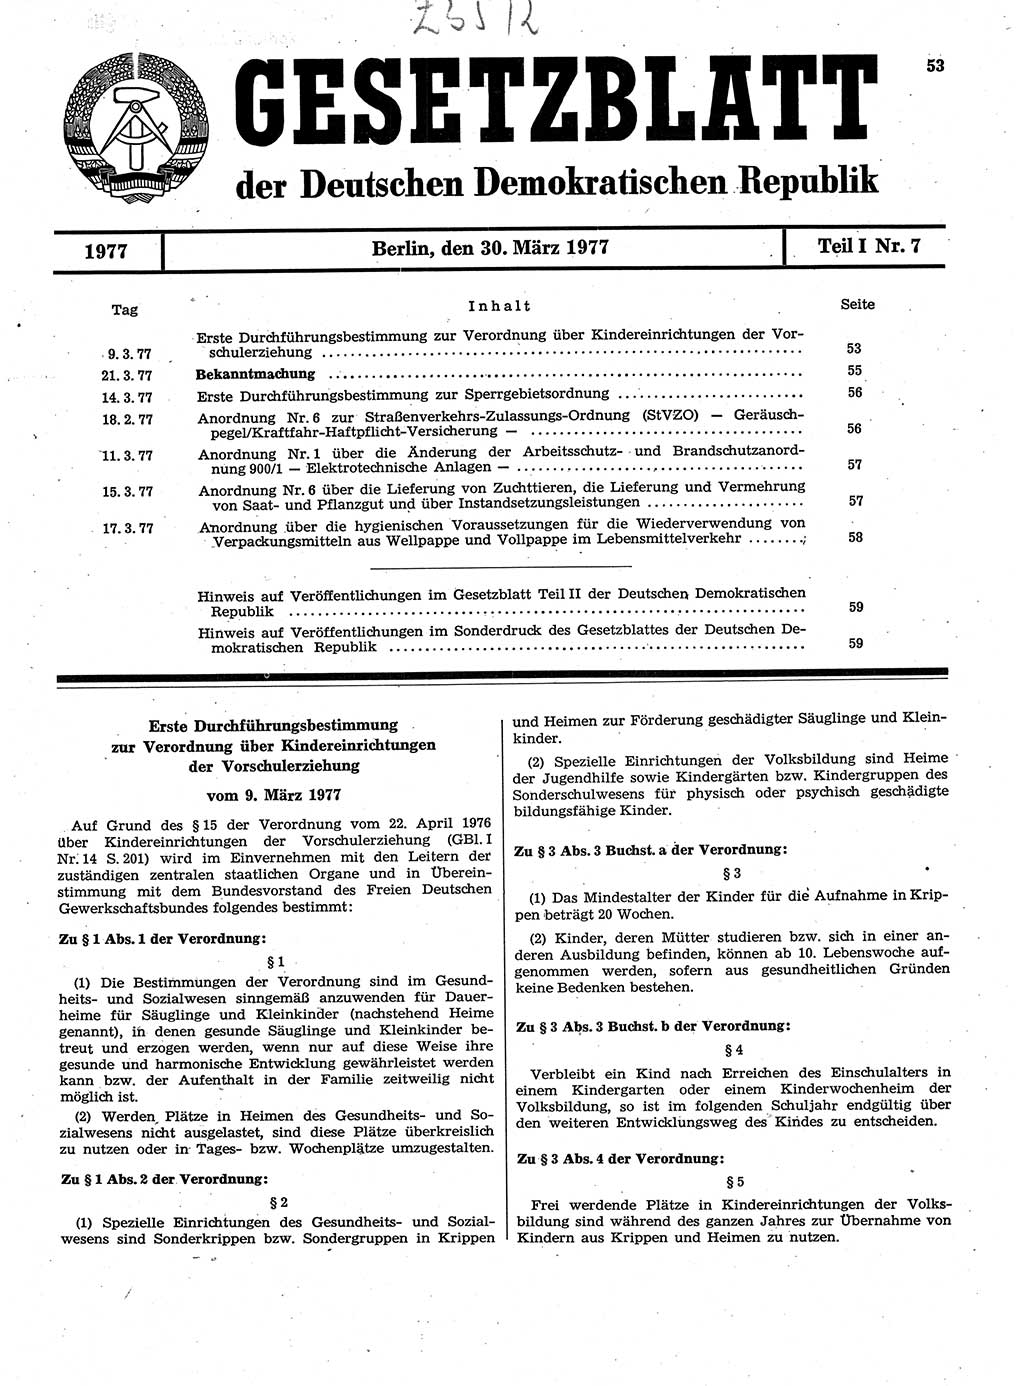 Gesetzblatt (GBl.) der Deutschen Demokratischen Republik (DDR) Teil Ⅰ 1977, Seite 53 (GBl. DDR Ⅰ 1977, S. 53)